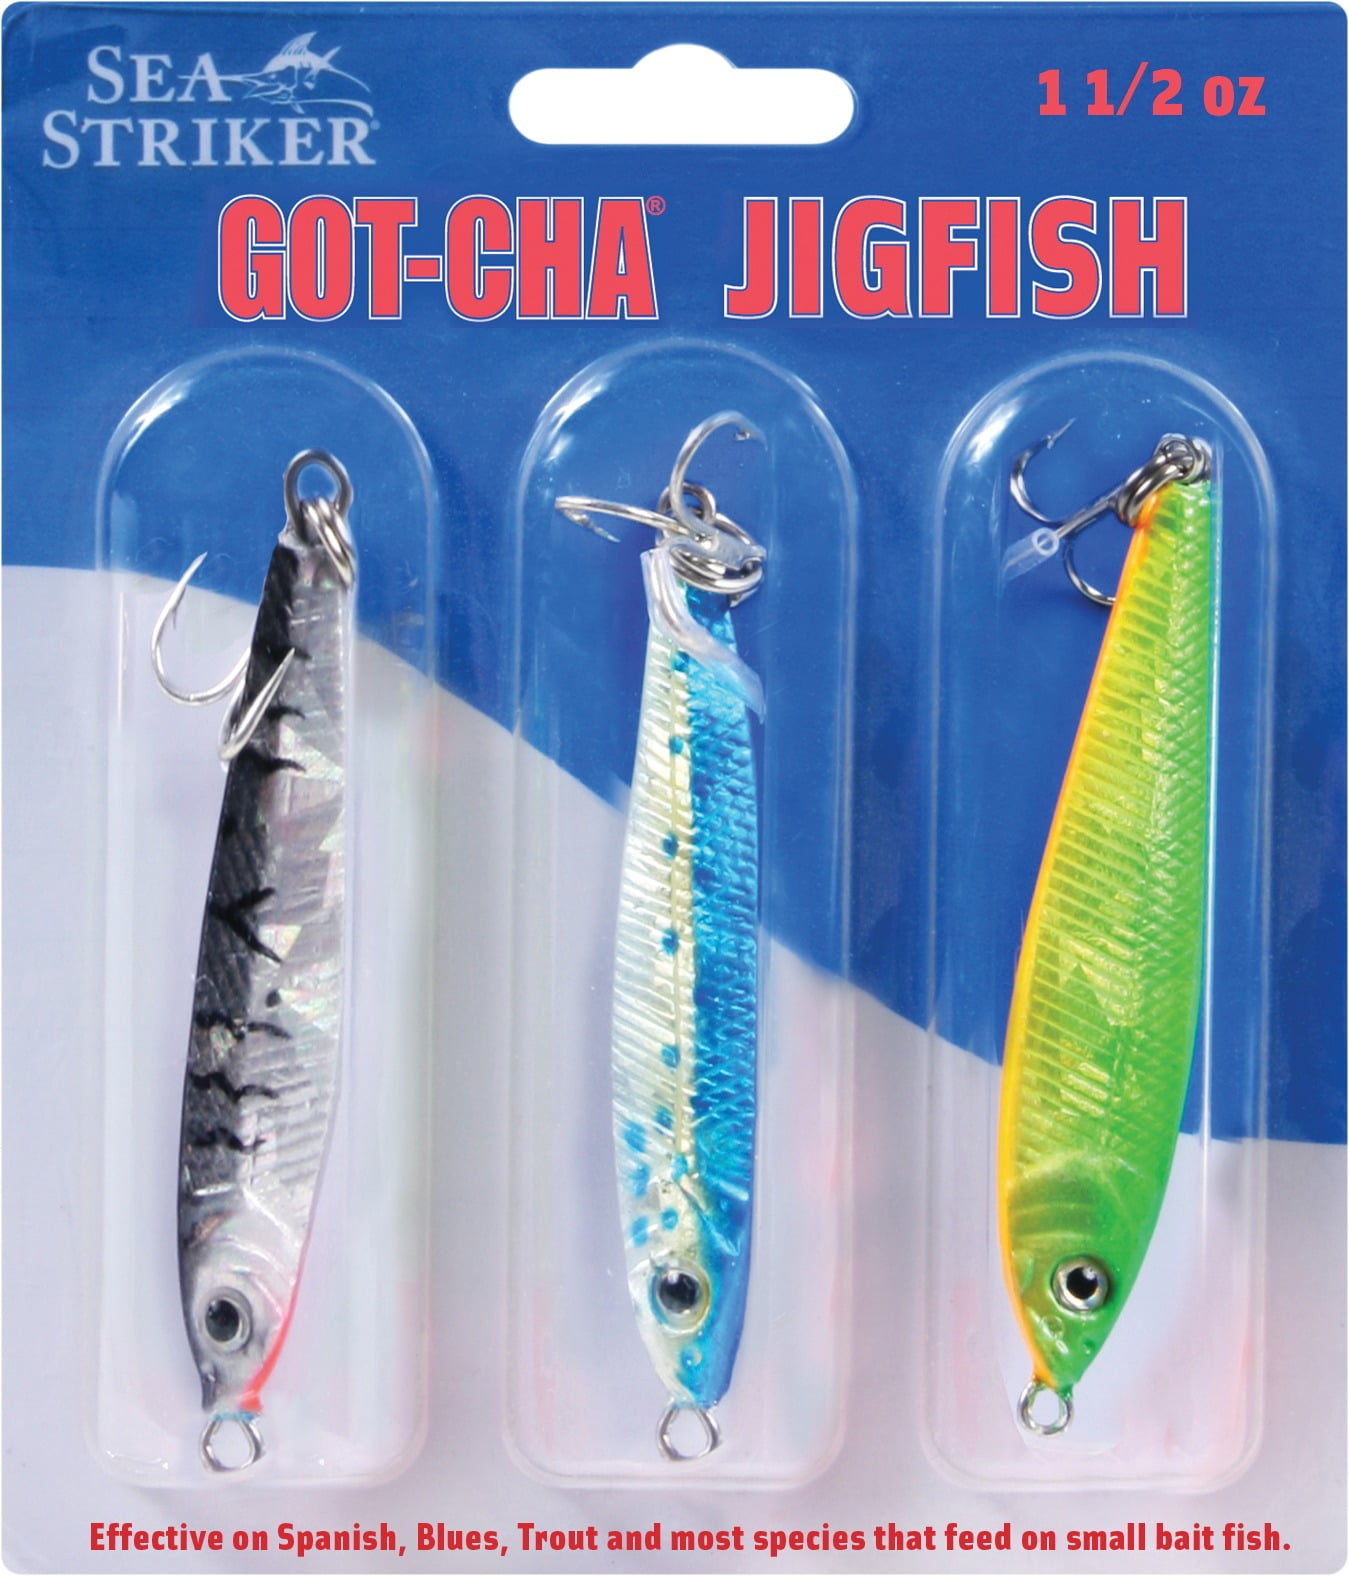 Big Catch Fishing Tackle - Squid Hunter Asai Shika